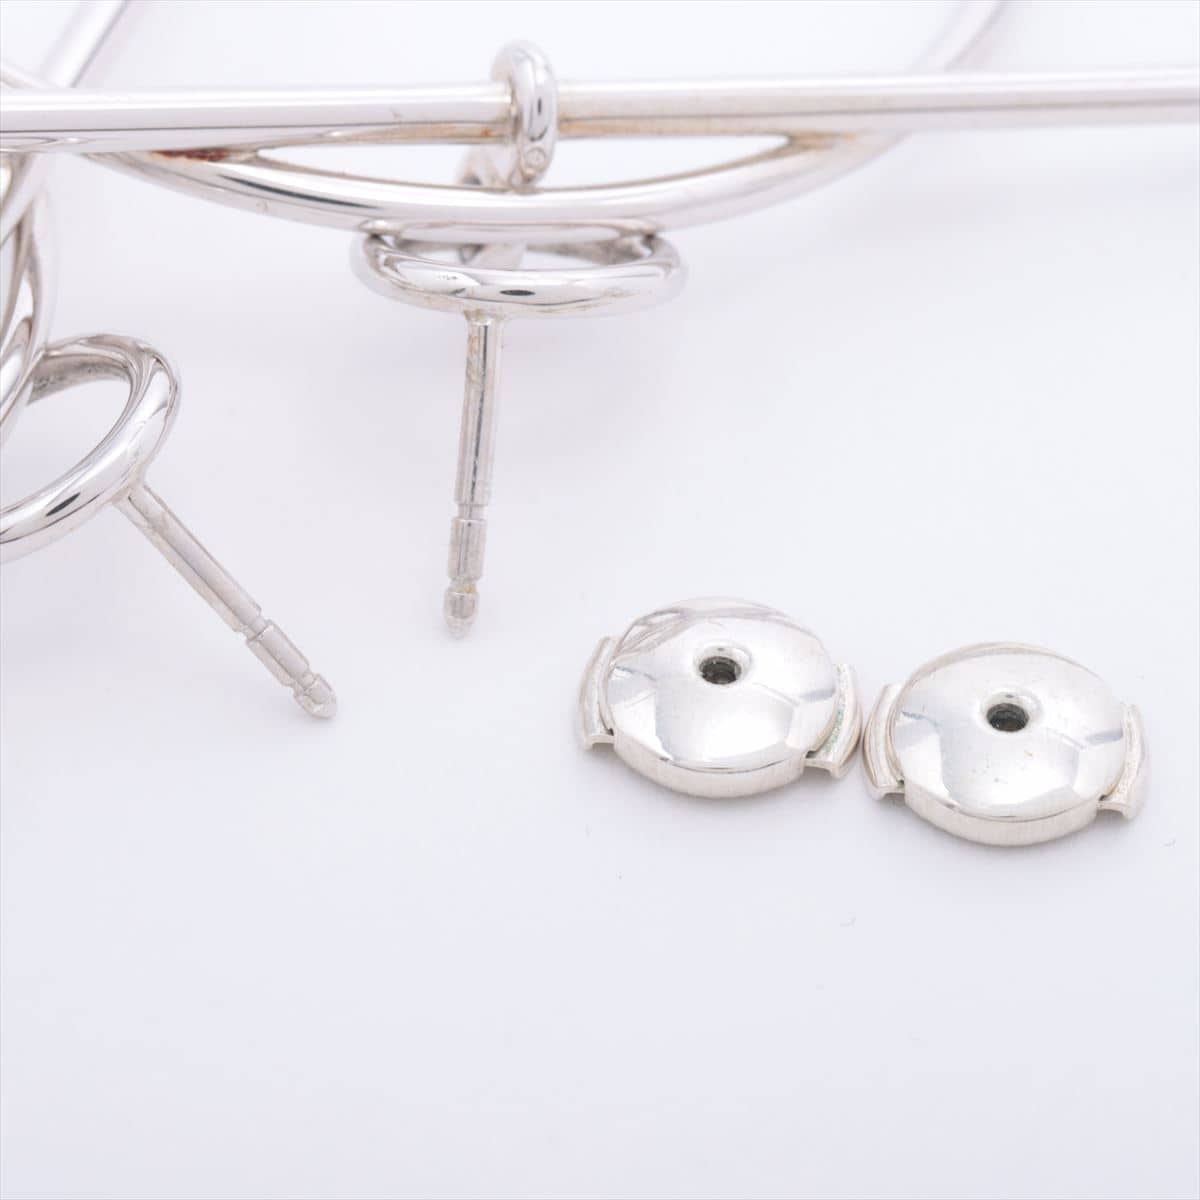 Hermès Loop Medium Piercing jewelry (for both ears) 925 11.1g Silver